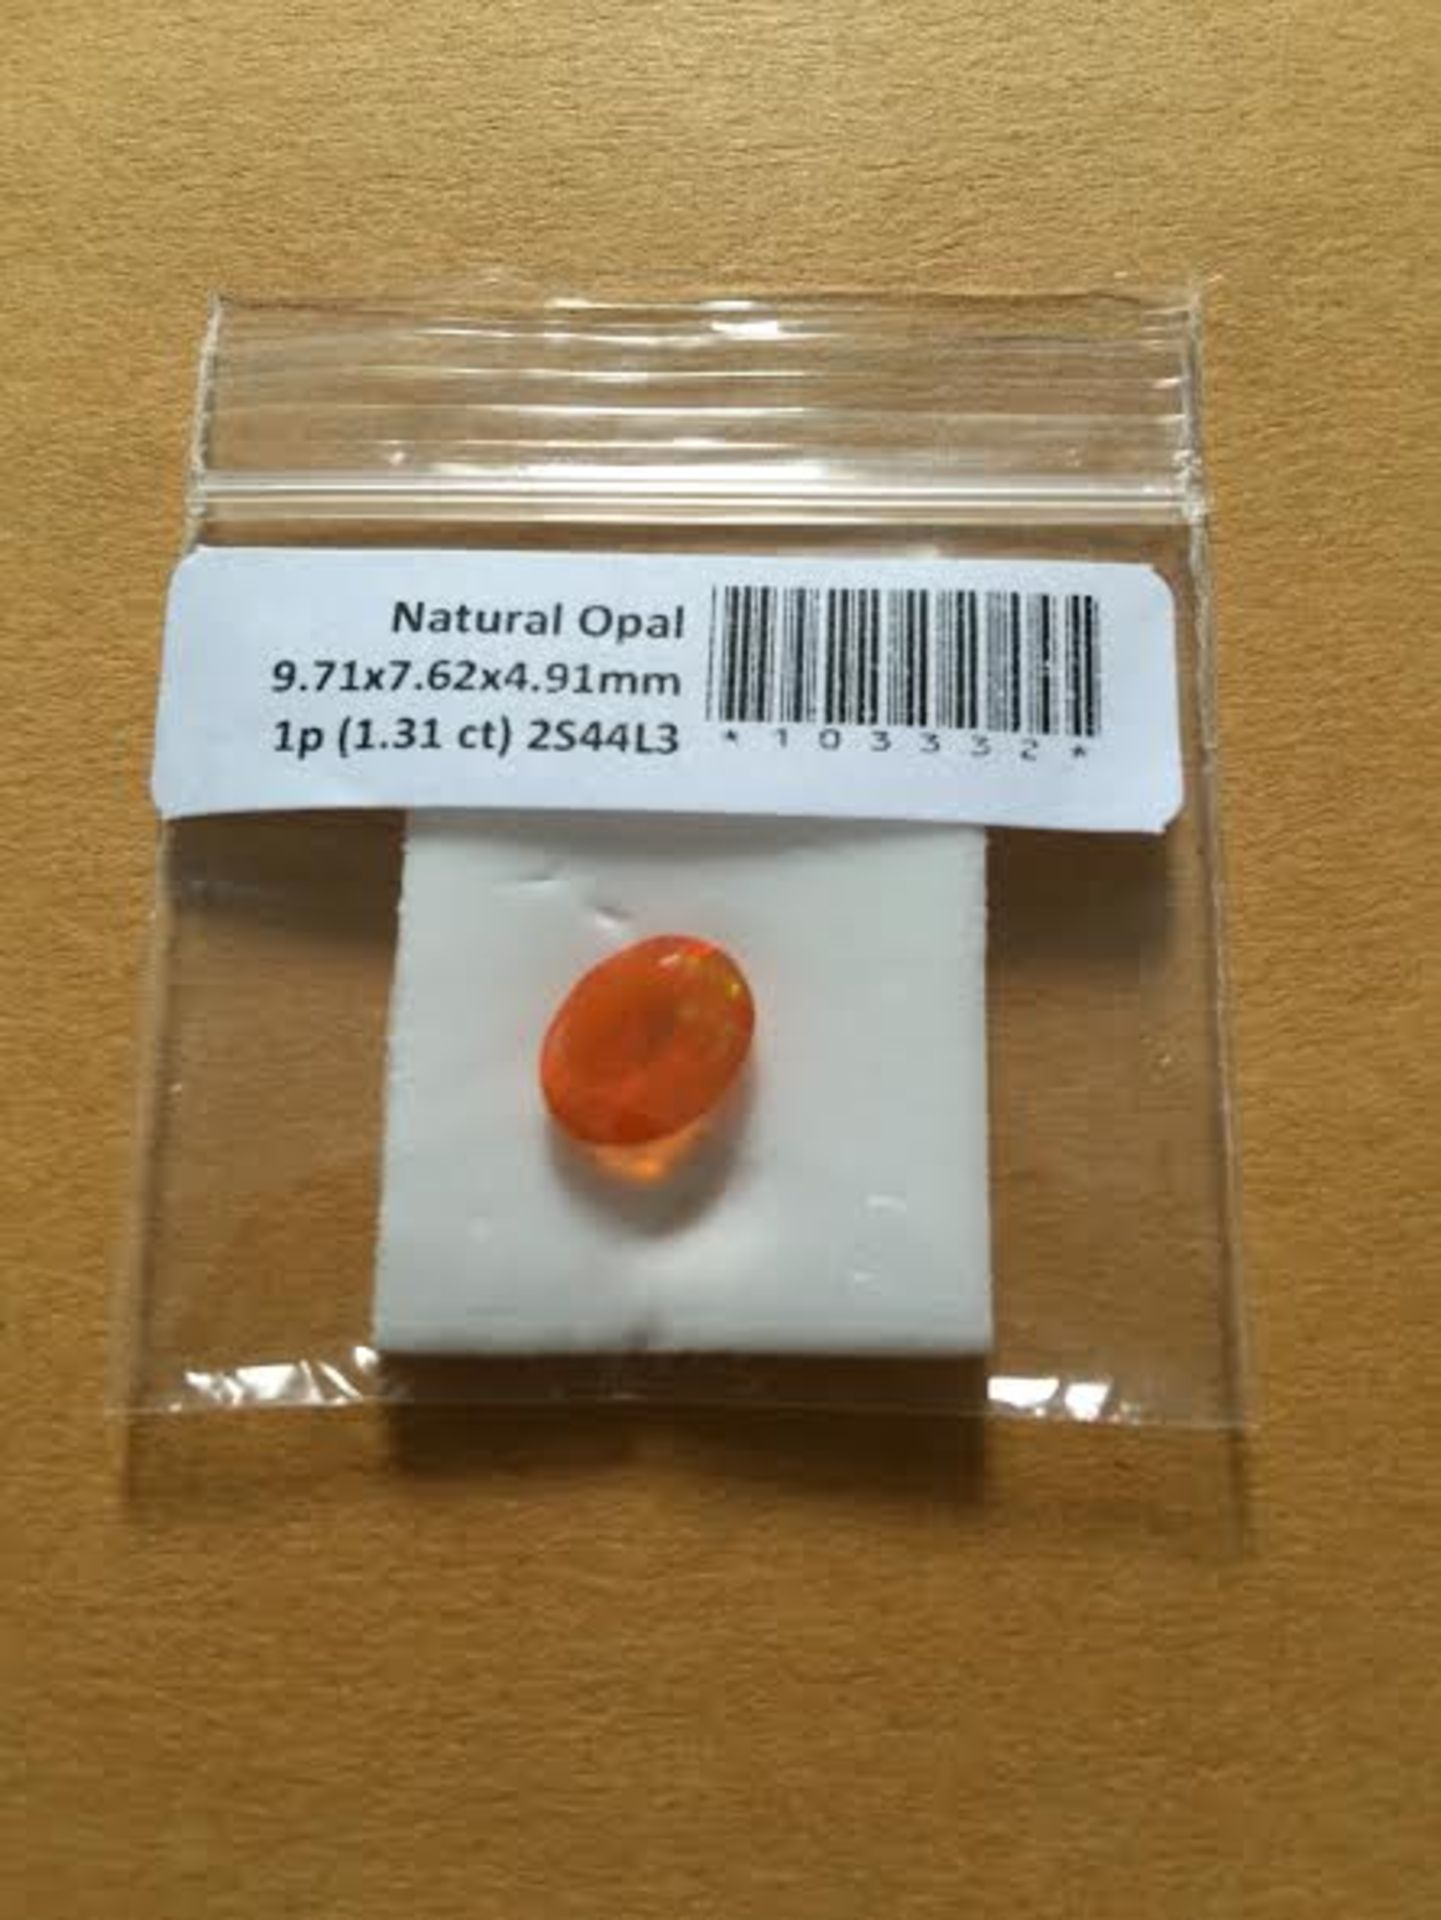 1.35 ct natural opal